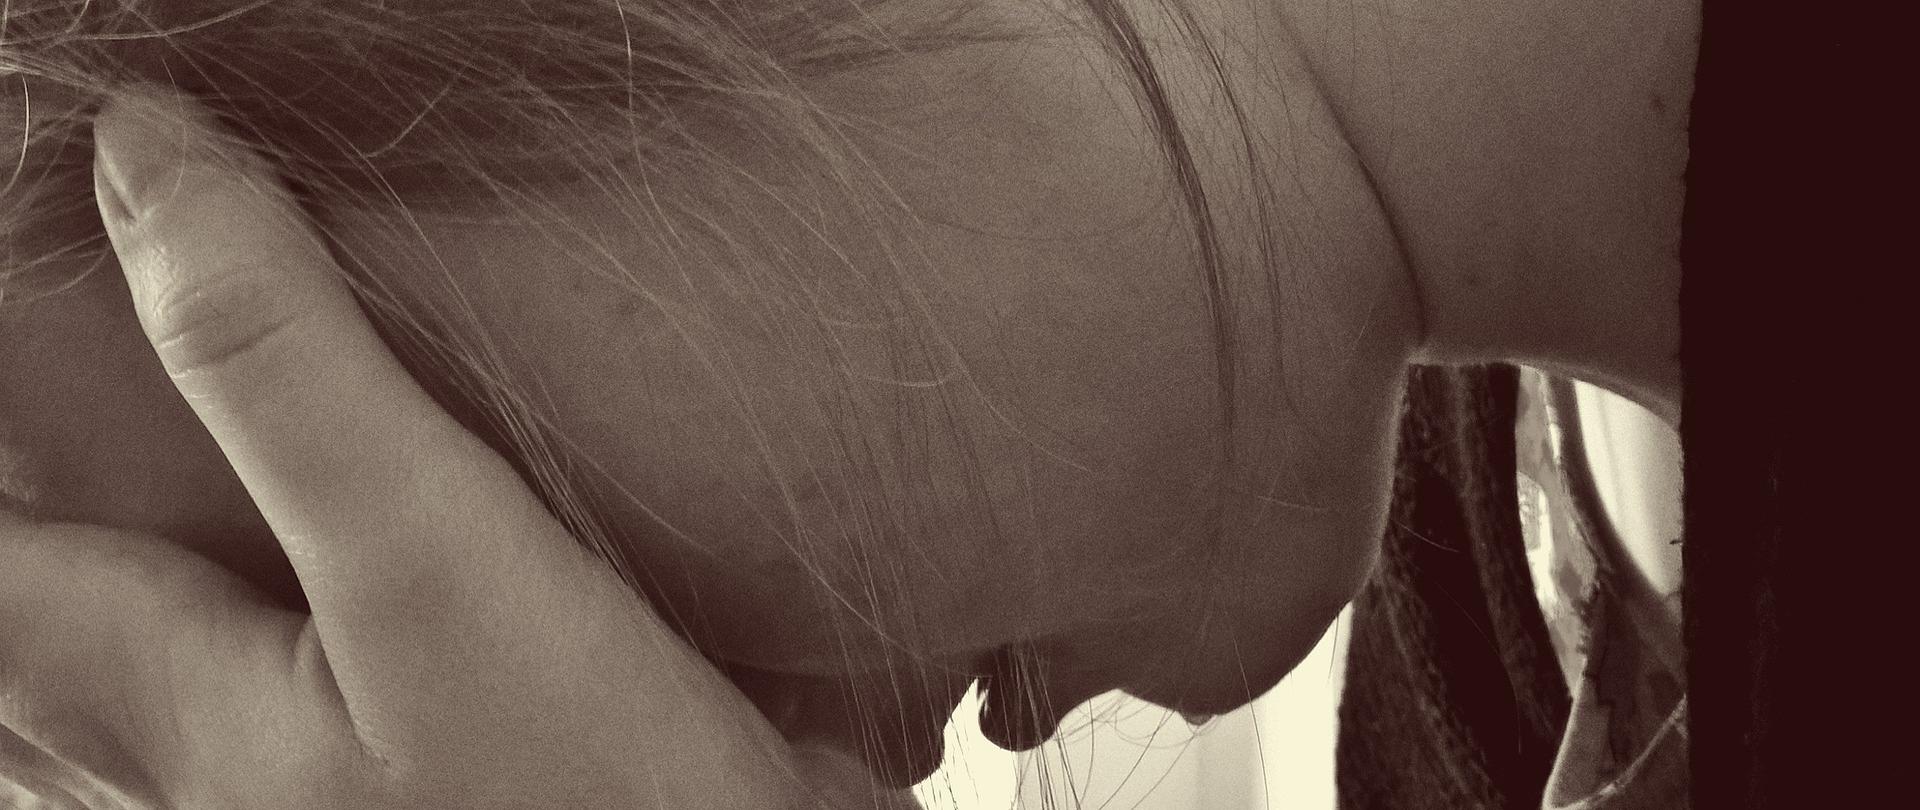 Przemoc w rodzinie (zdjęcie ilustracyjne). Na czarno-białej fotografii widoczna młoda dziewczyna z twarzą ukrytą w dłoniach.